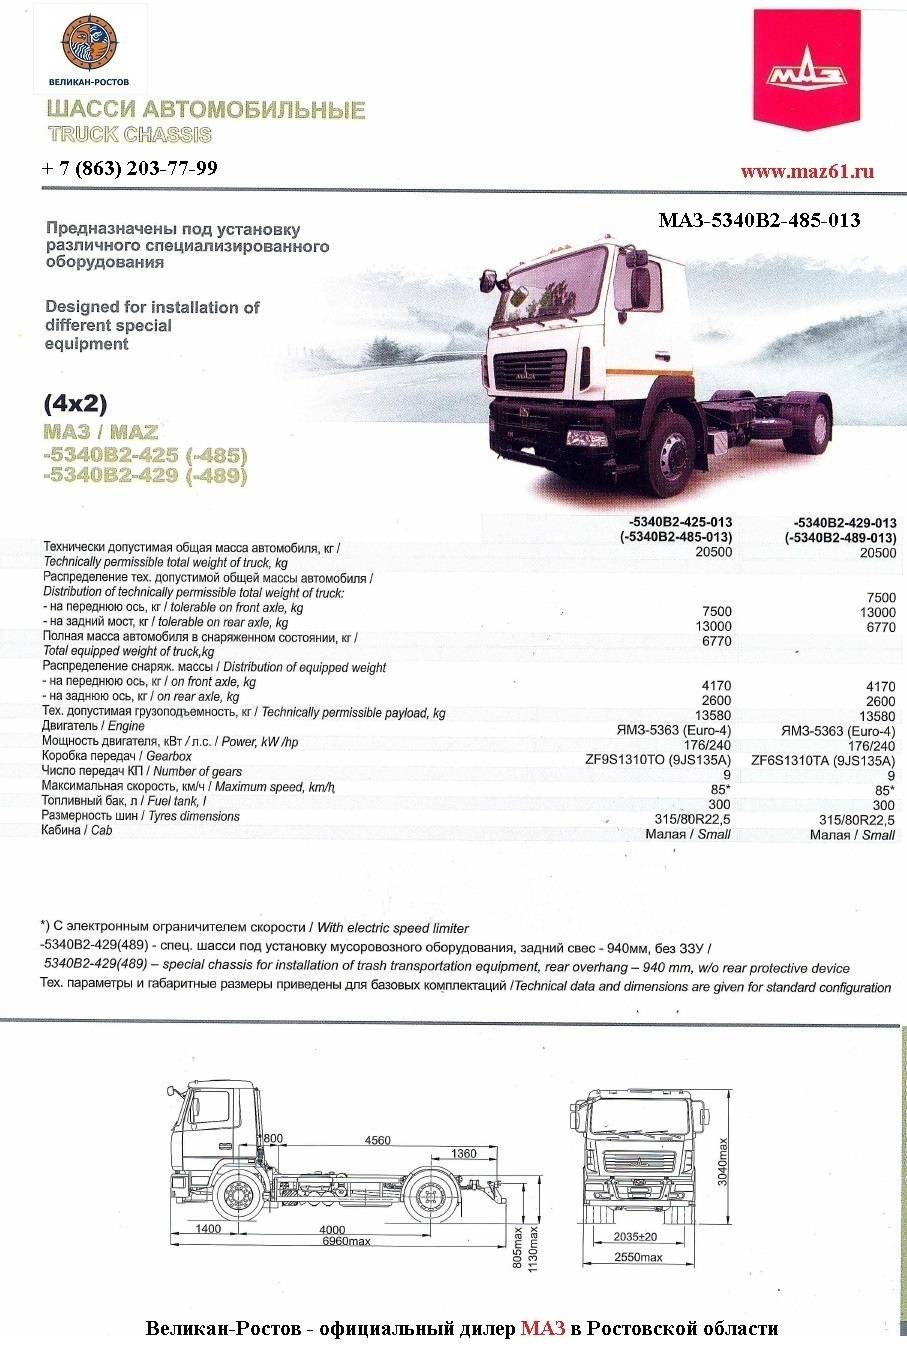 ТОП-4 модификации грузовика МАЗ-5340 и технические характеристики базовой модели